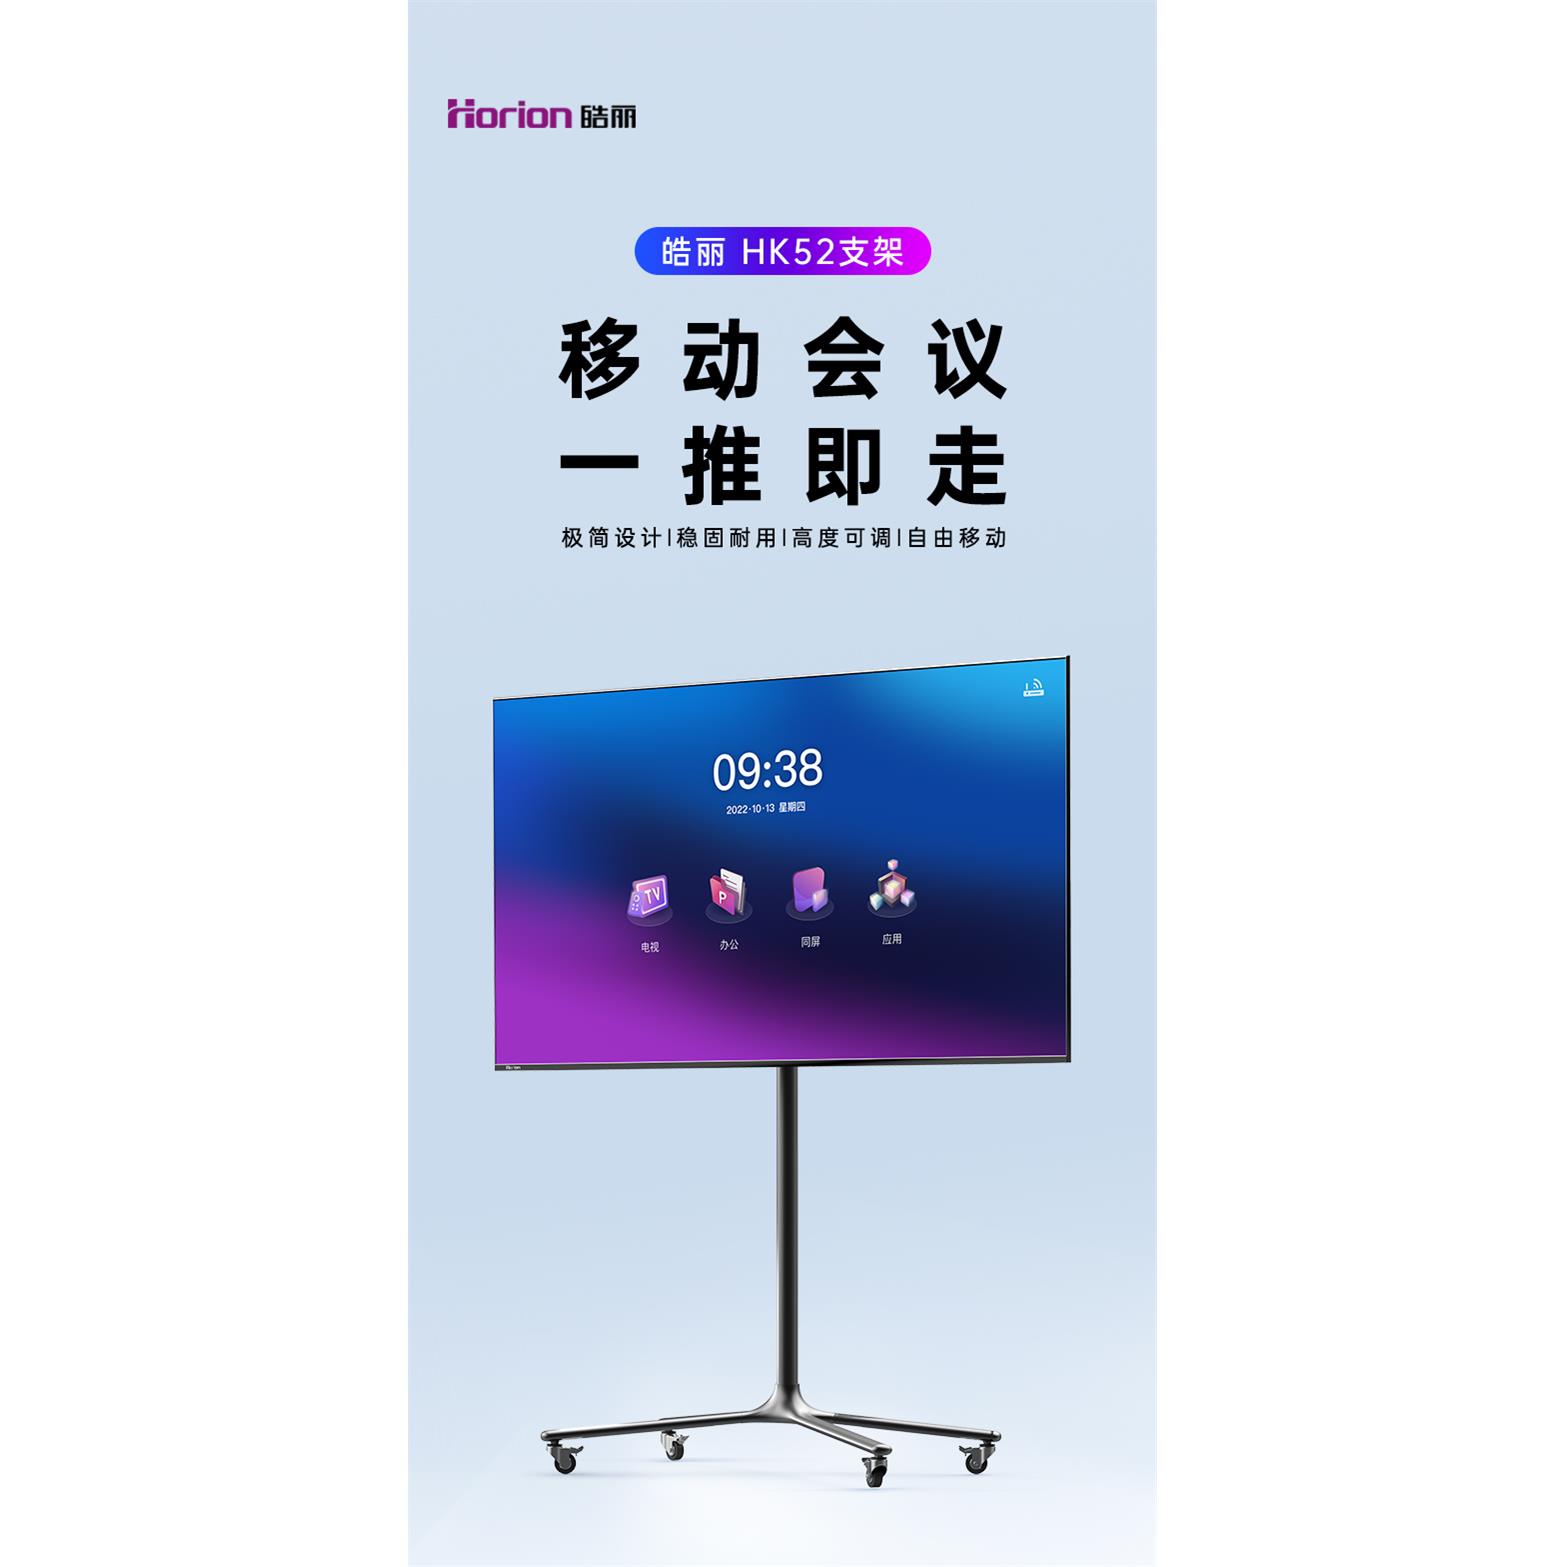 皓丽 HK52会议平板触控一体机移动支架电子白板底座电视可推拉支